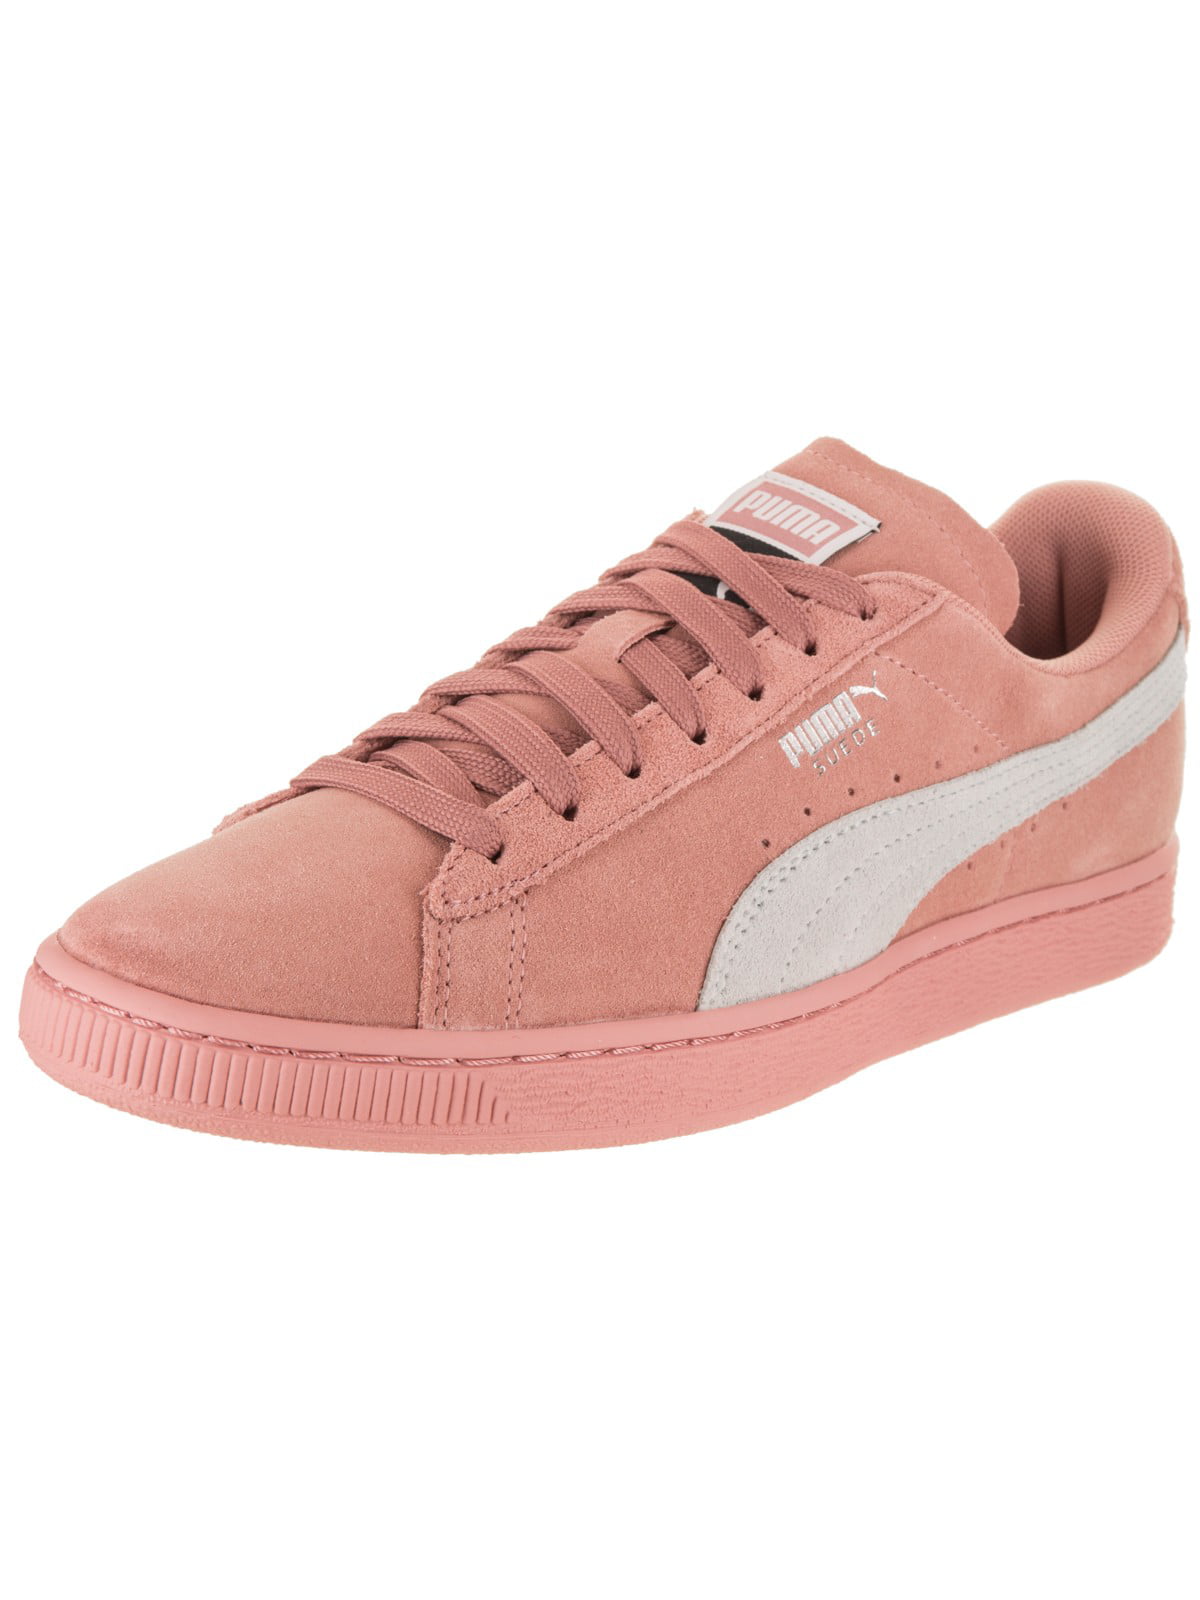 puma sneakers peach